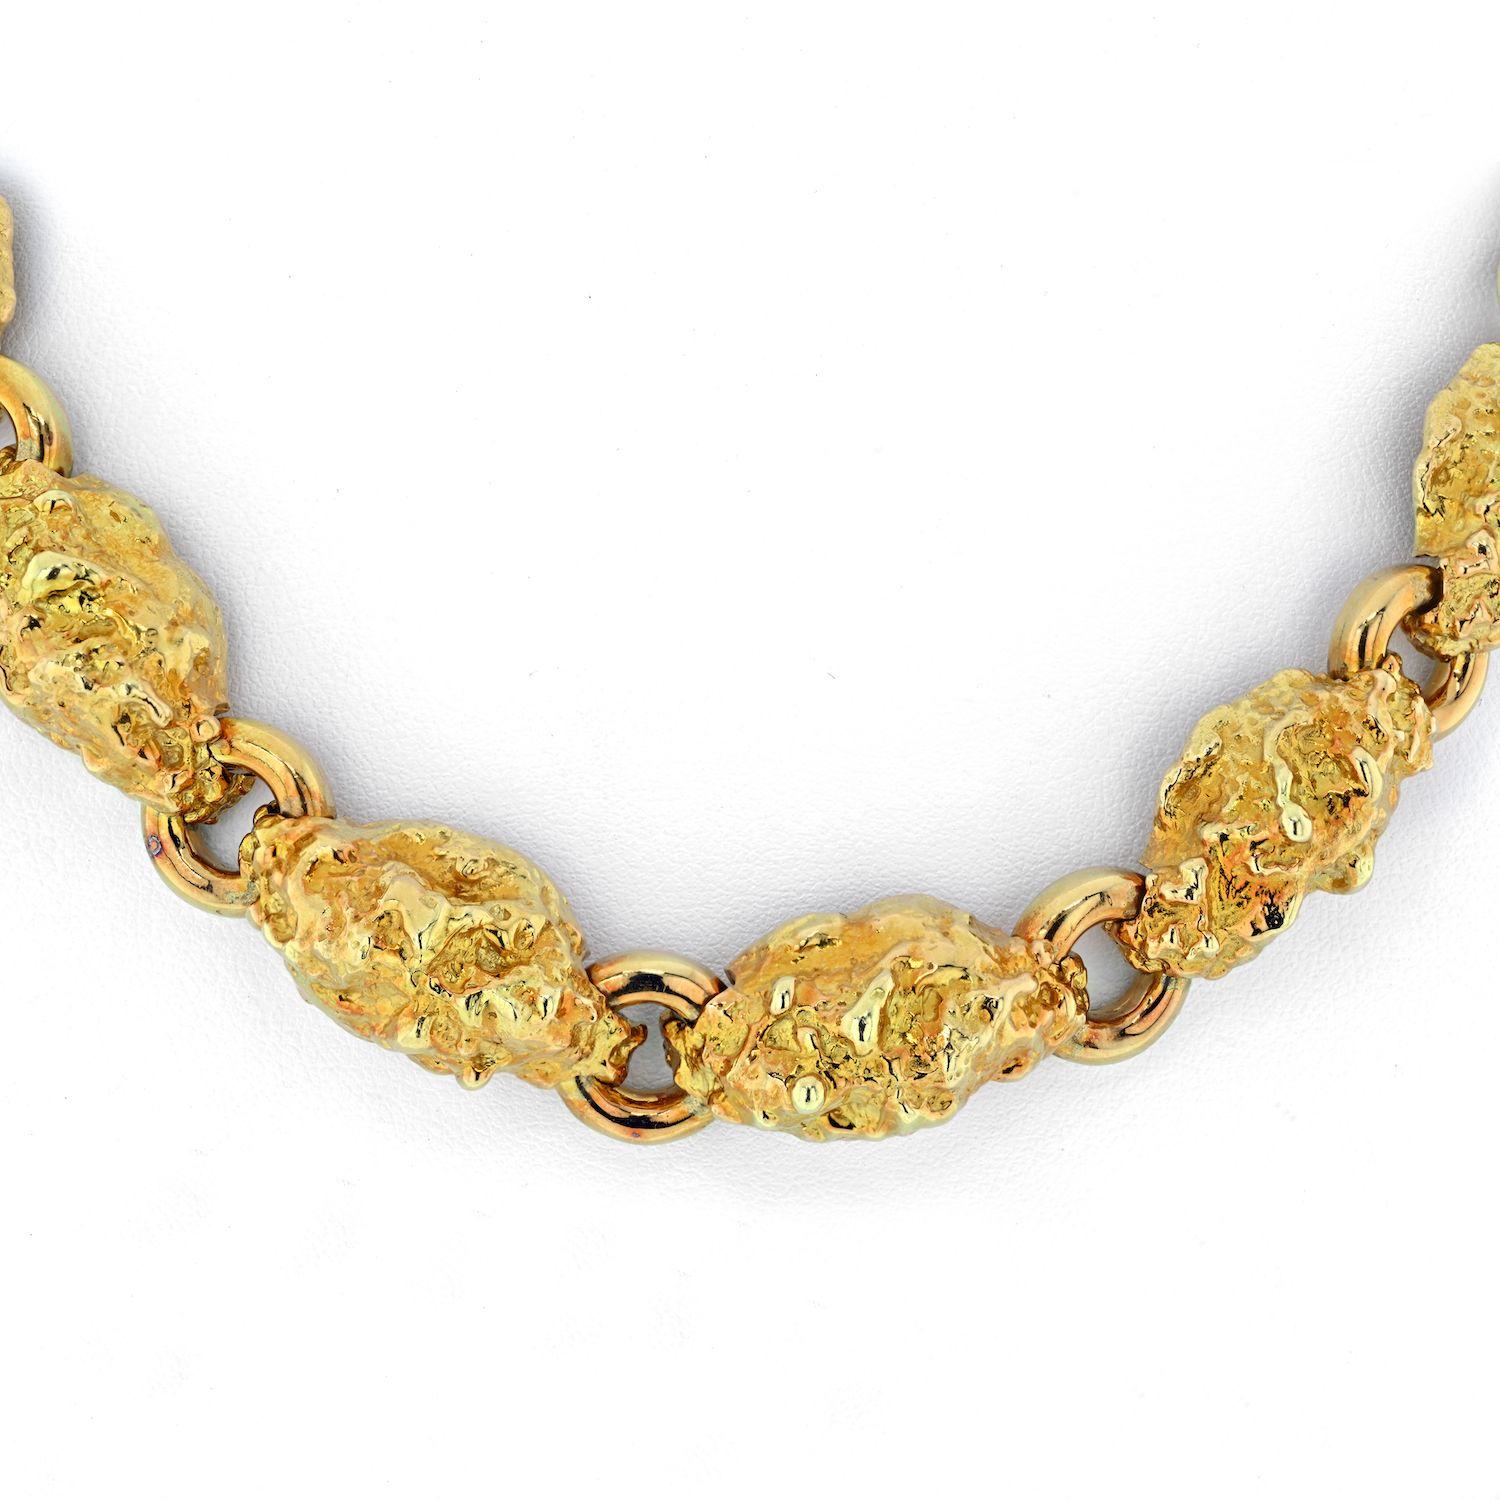 Diese David Webb Halskette besteht aus Gliedern im Nugget-Stil aus 18 Karat Gelbgold und hat einen fließenden Verlauf. Die Nuggets sind aus massivem 18-karätigem Gelbgold und sitzen eng am Hals, direkt über den Schlüsselbeinen. Diese Halskette passt